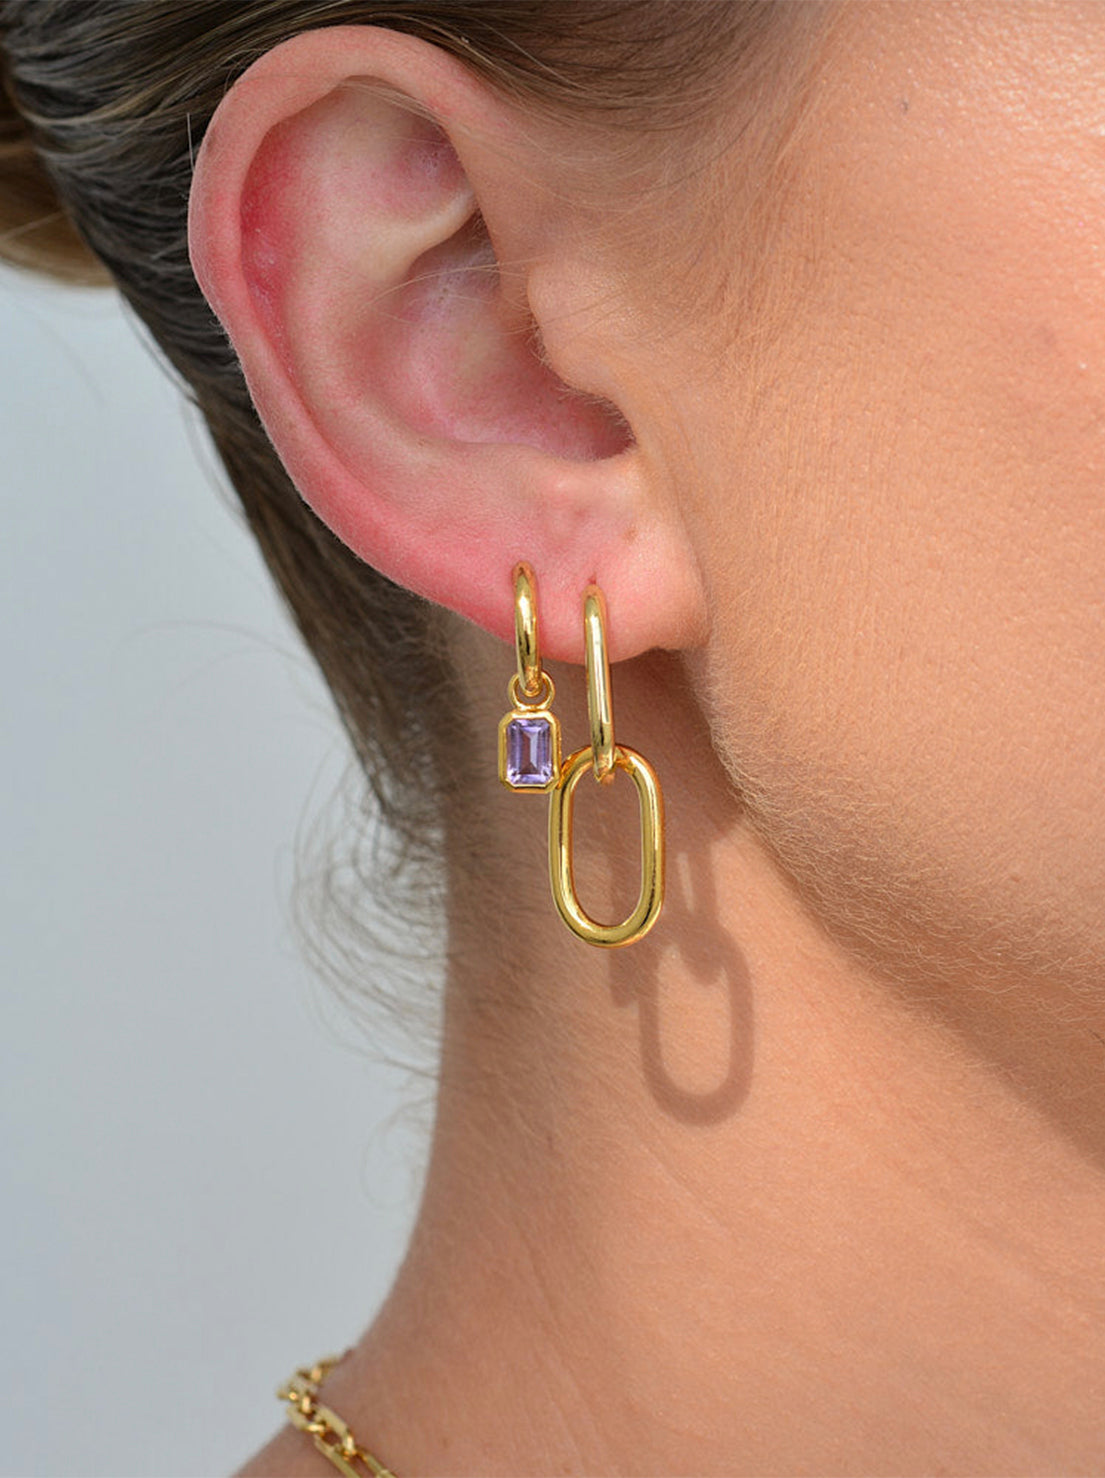 Linda Tahija - Gemme Huggie Earrings - Gold Plated - Amethyst